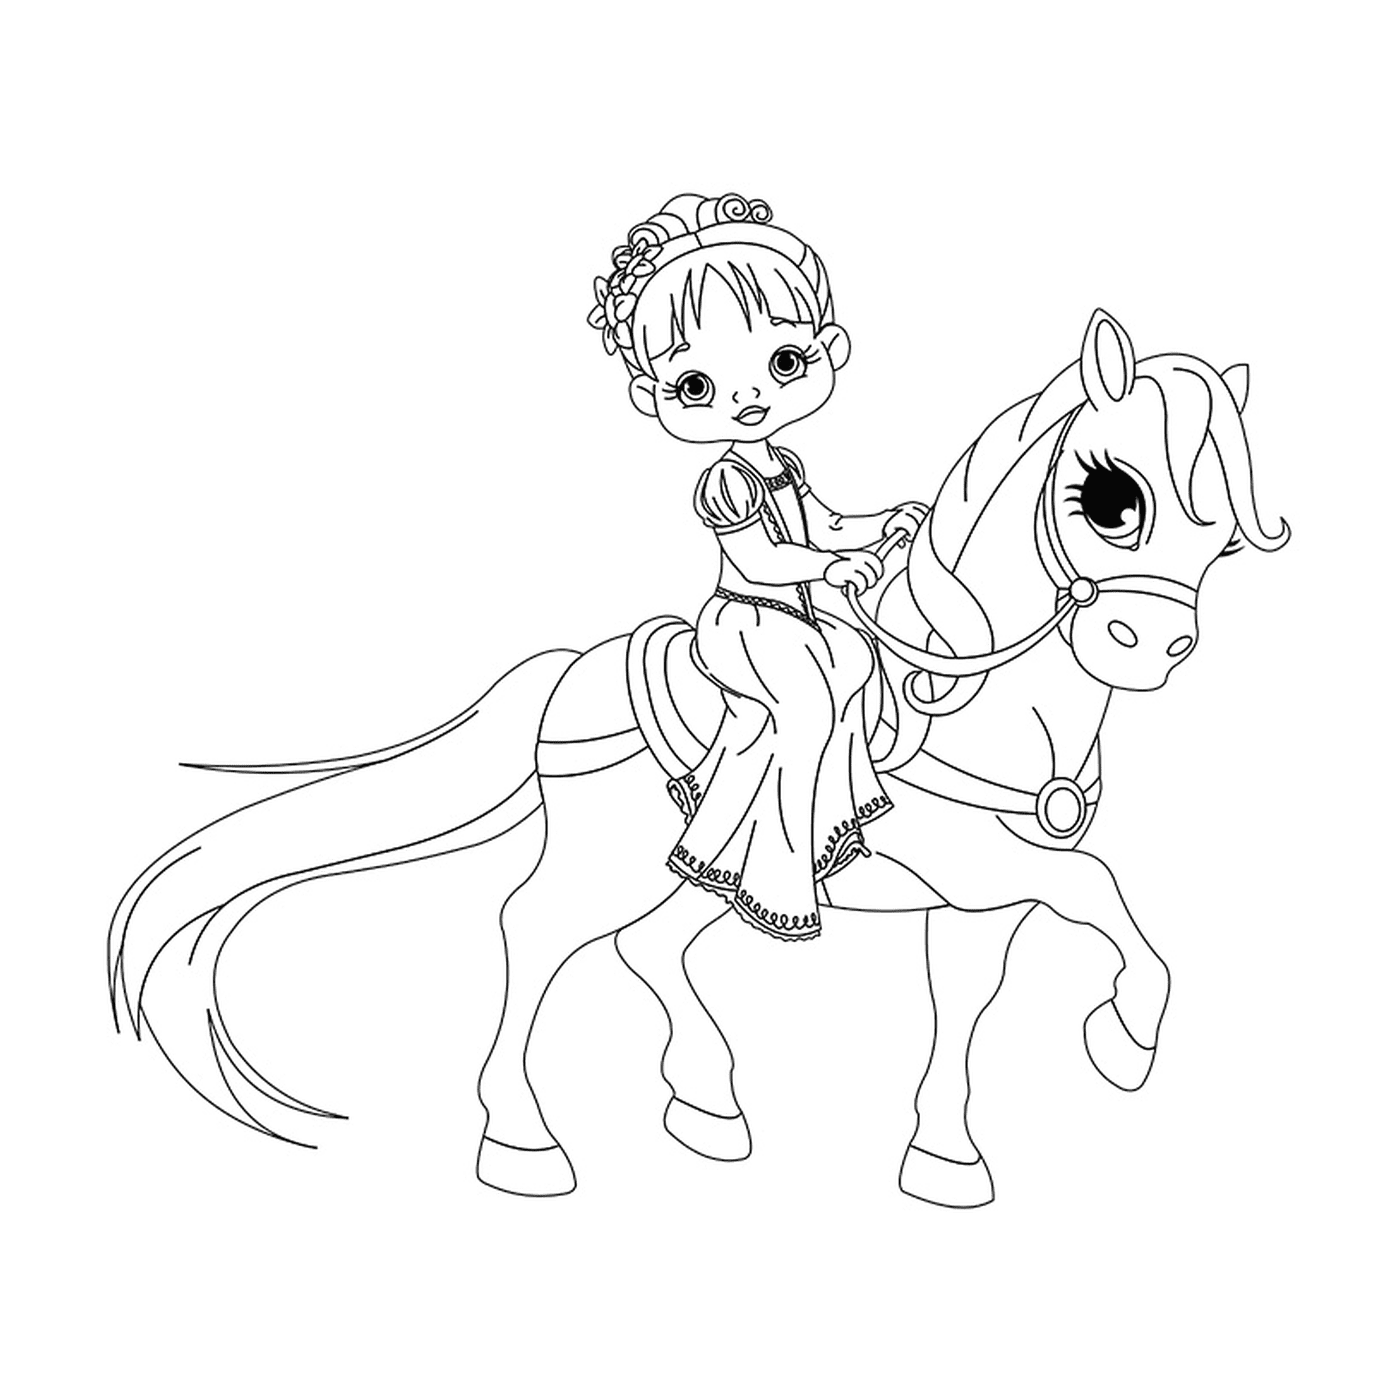   Princesse à cheval - Une petite fille monte sur le dos d'un cheval 